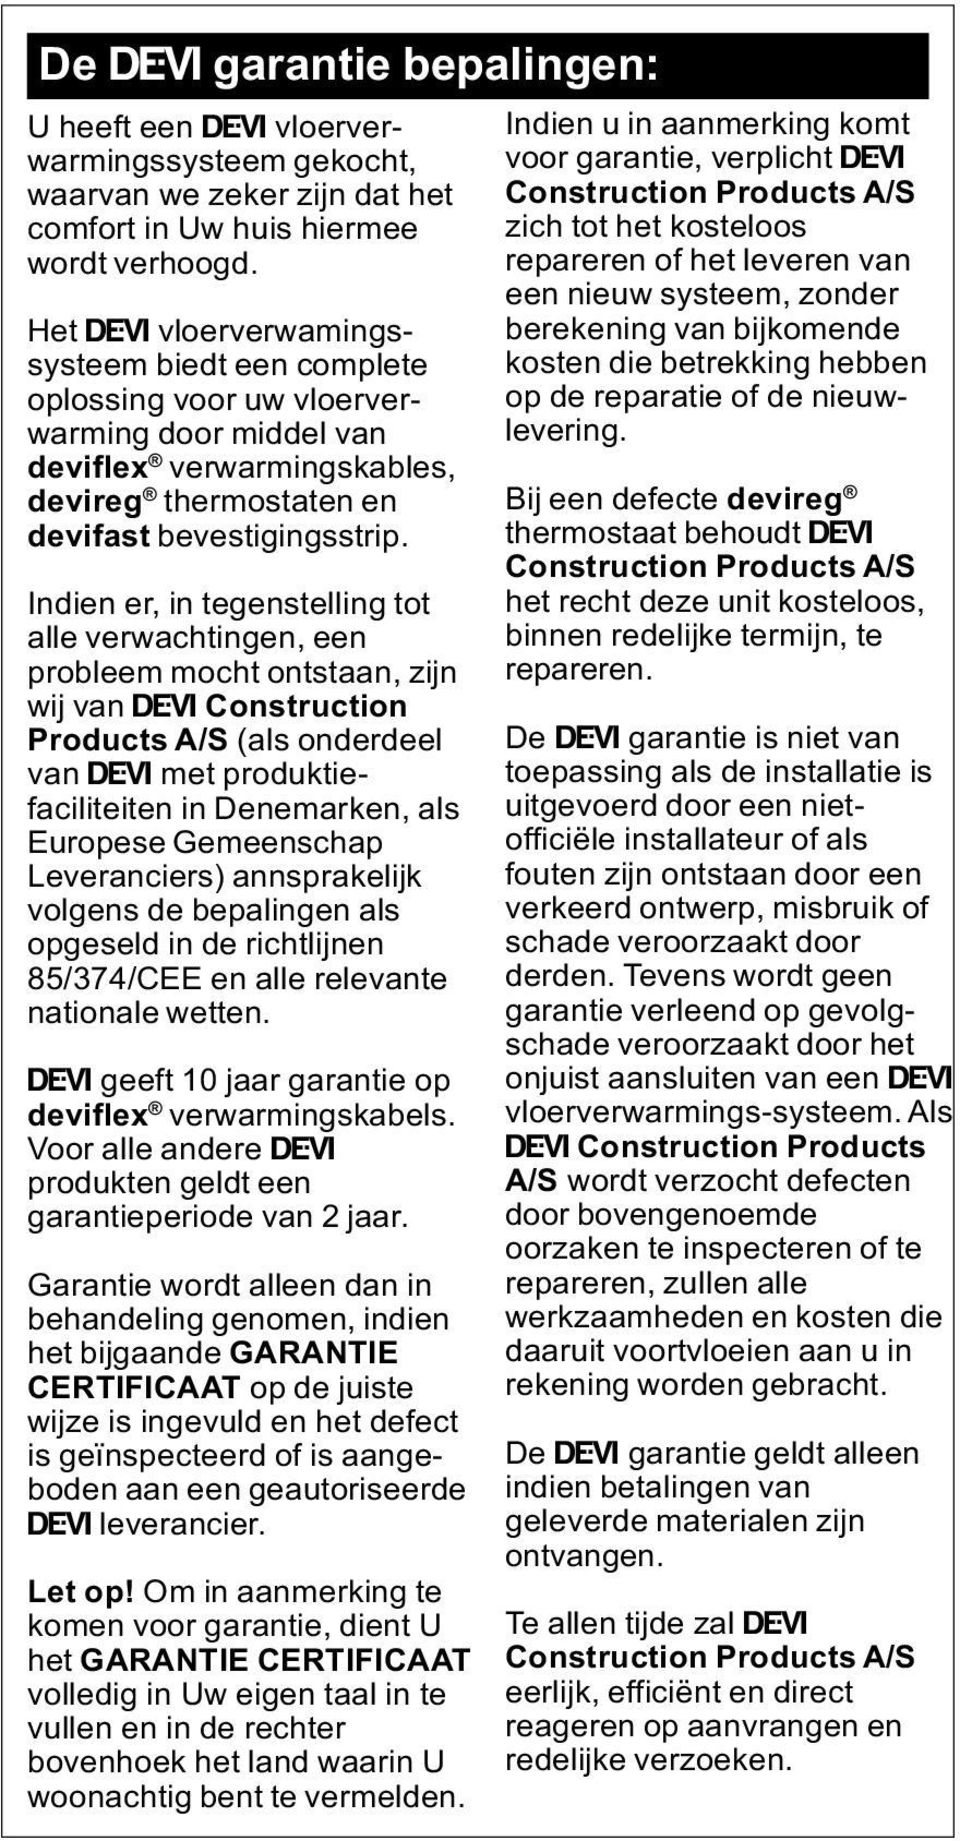 Indien er, in tegenstelling tot alle verwachtingen, een probleem mocht ontstaan, zijn wij van Ž Construction Products A/S (als onderdeel van Ž met produktiefaciliteiten in Denemarken, als Europese